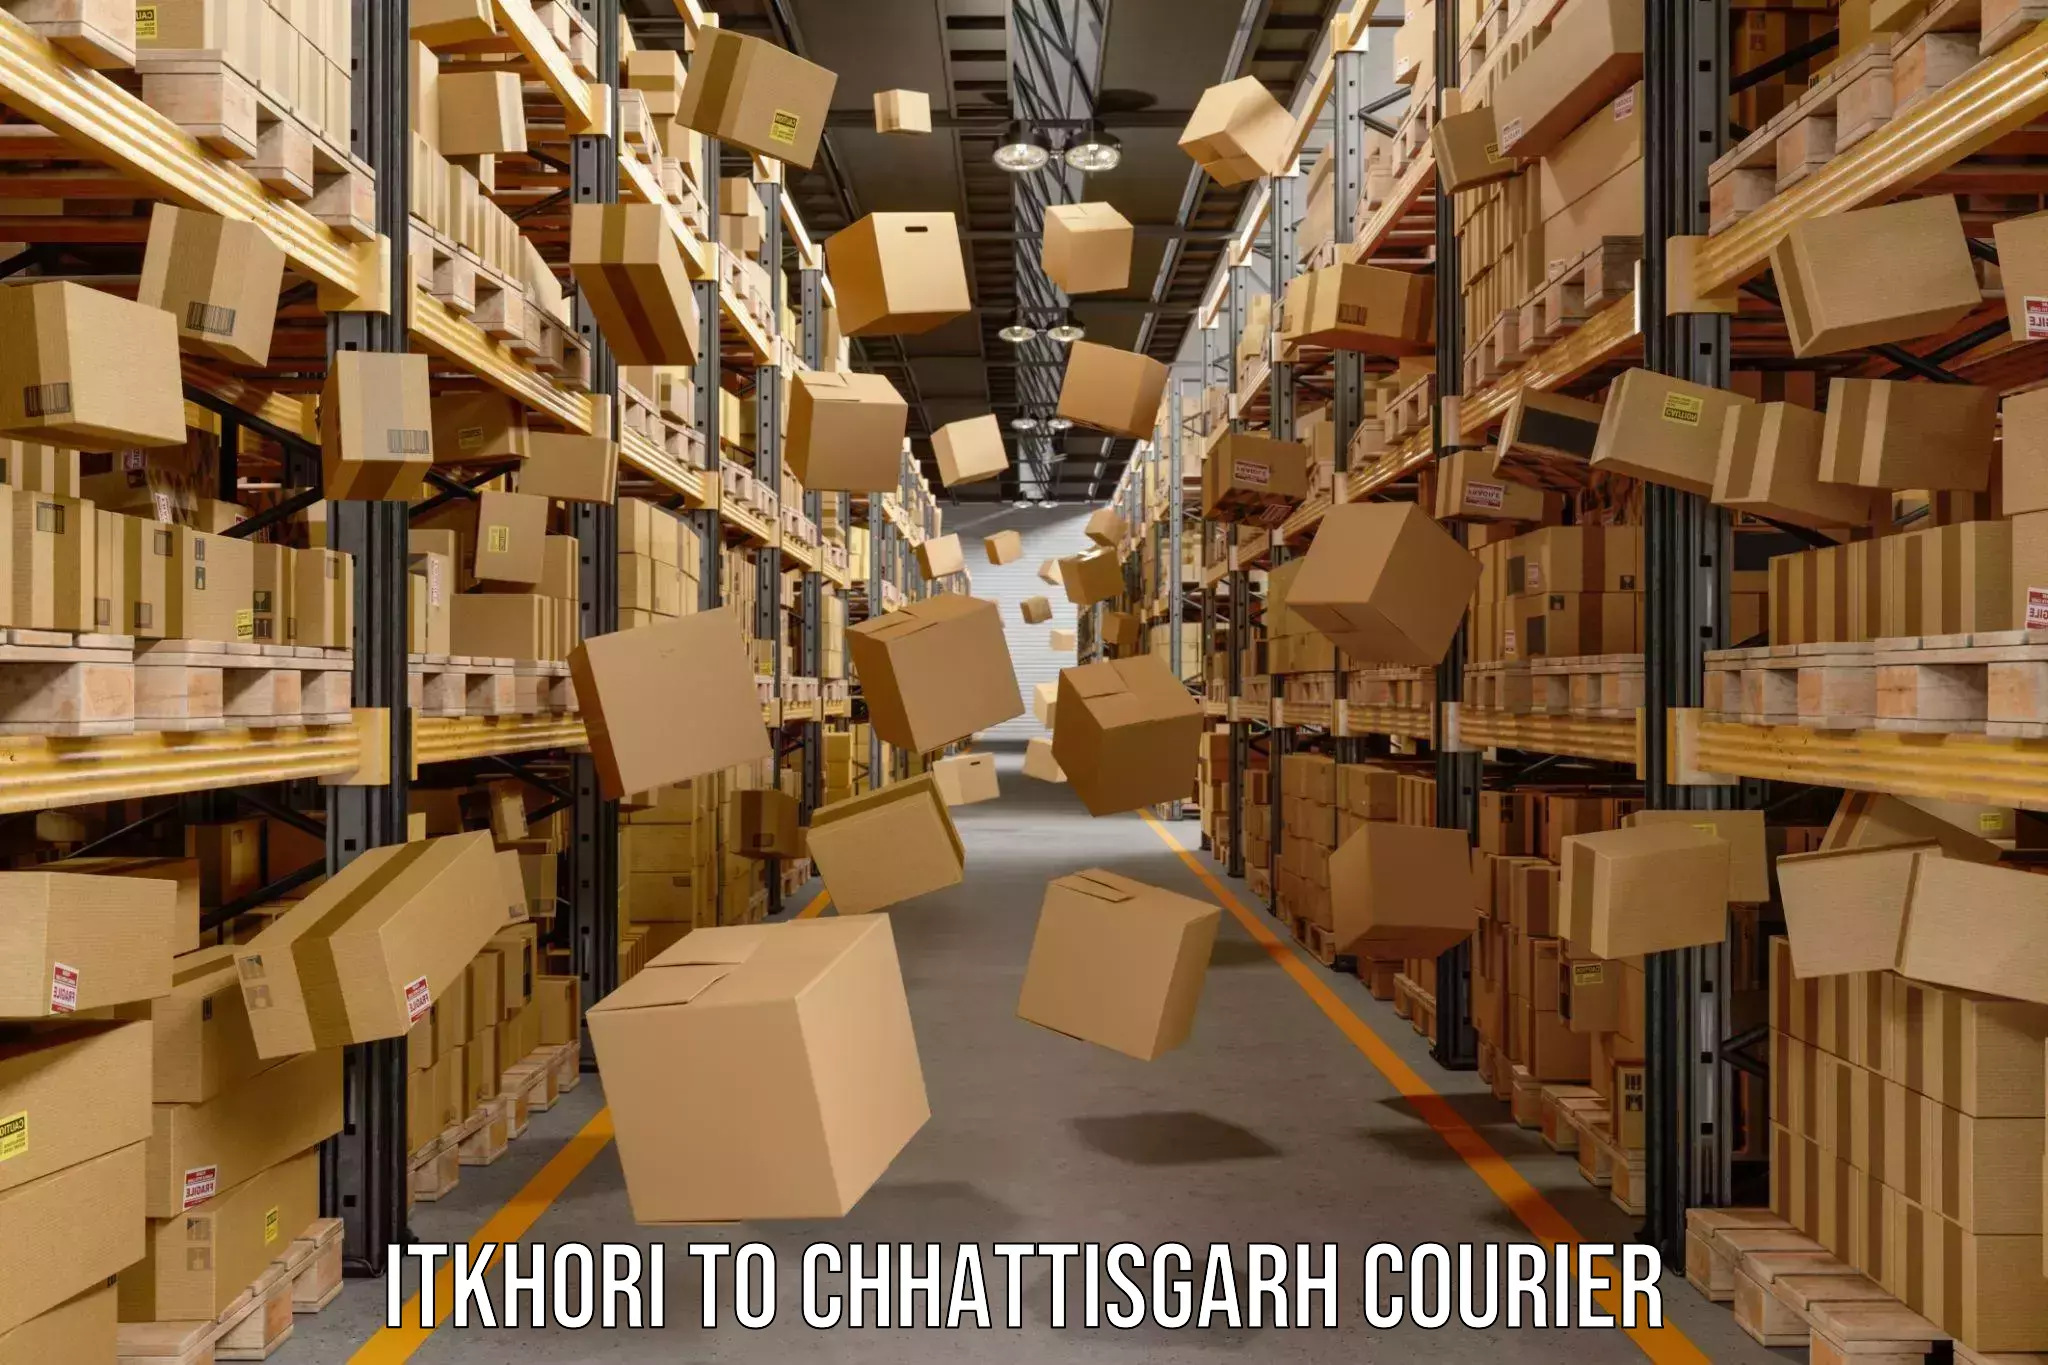 User-friendly delivery service Itkhori to Chhattisgarh